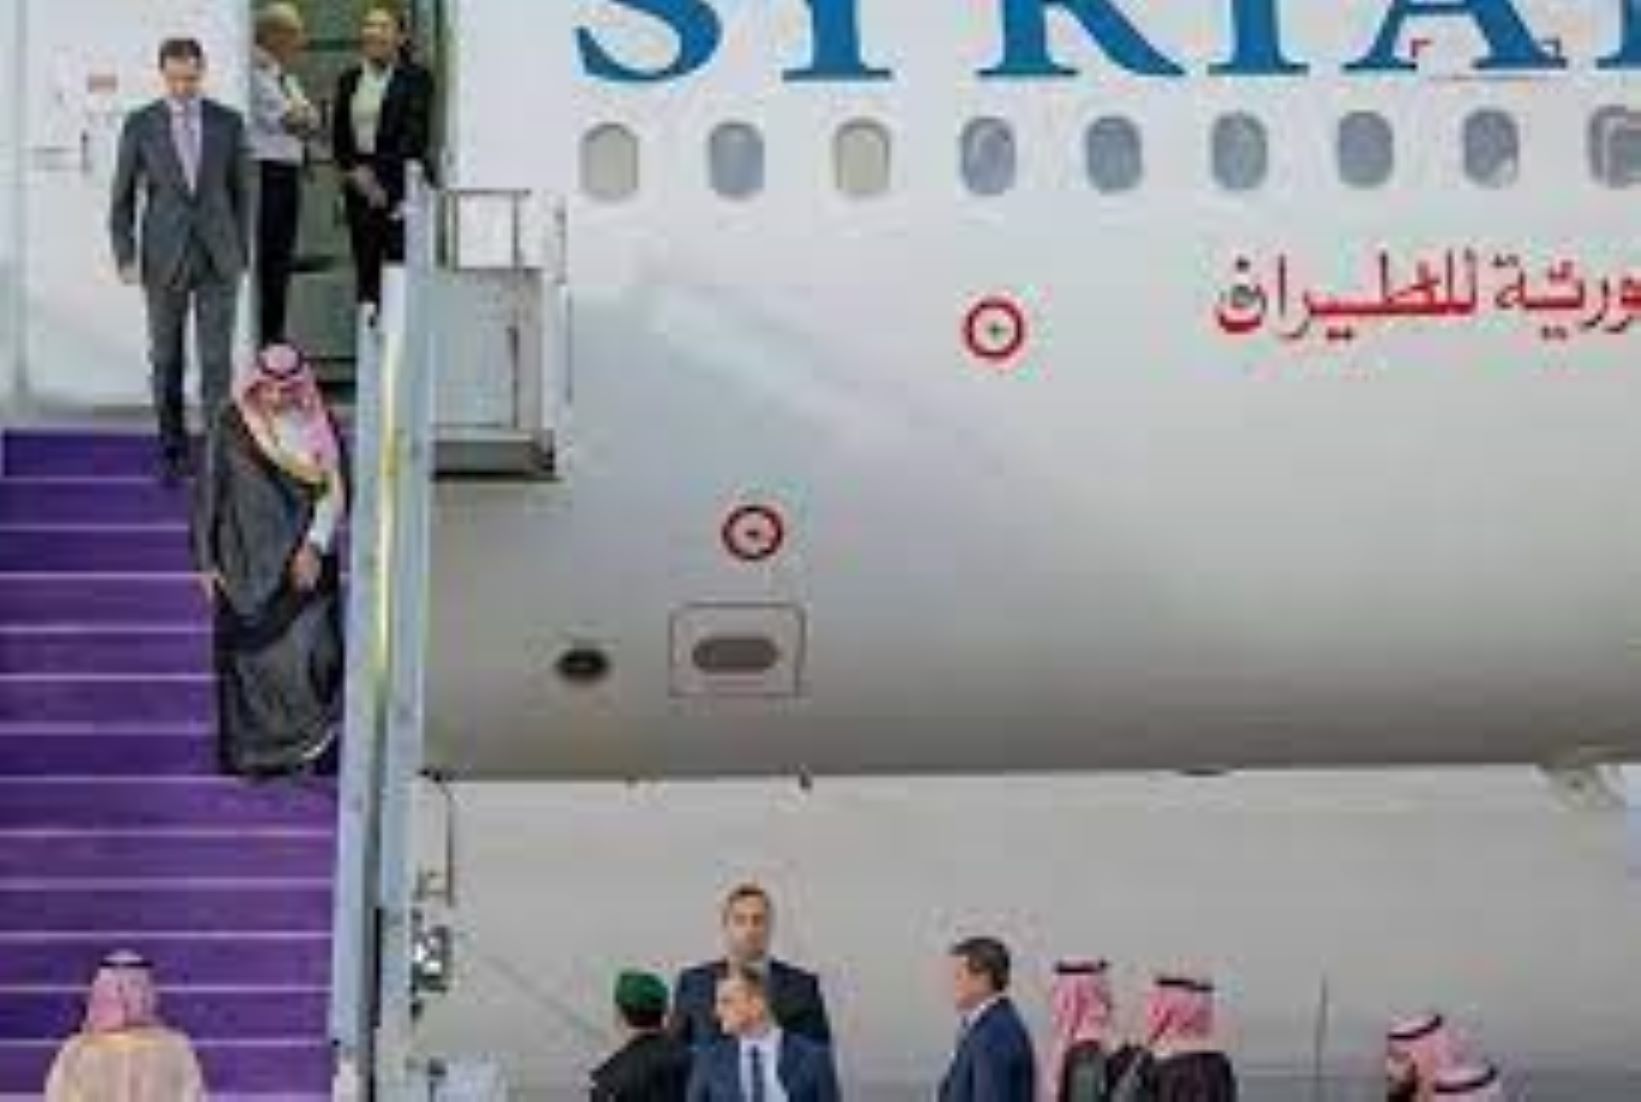 Syrian President In Saudi Arabia For Arab Summit